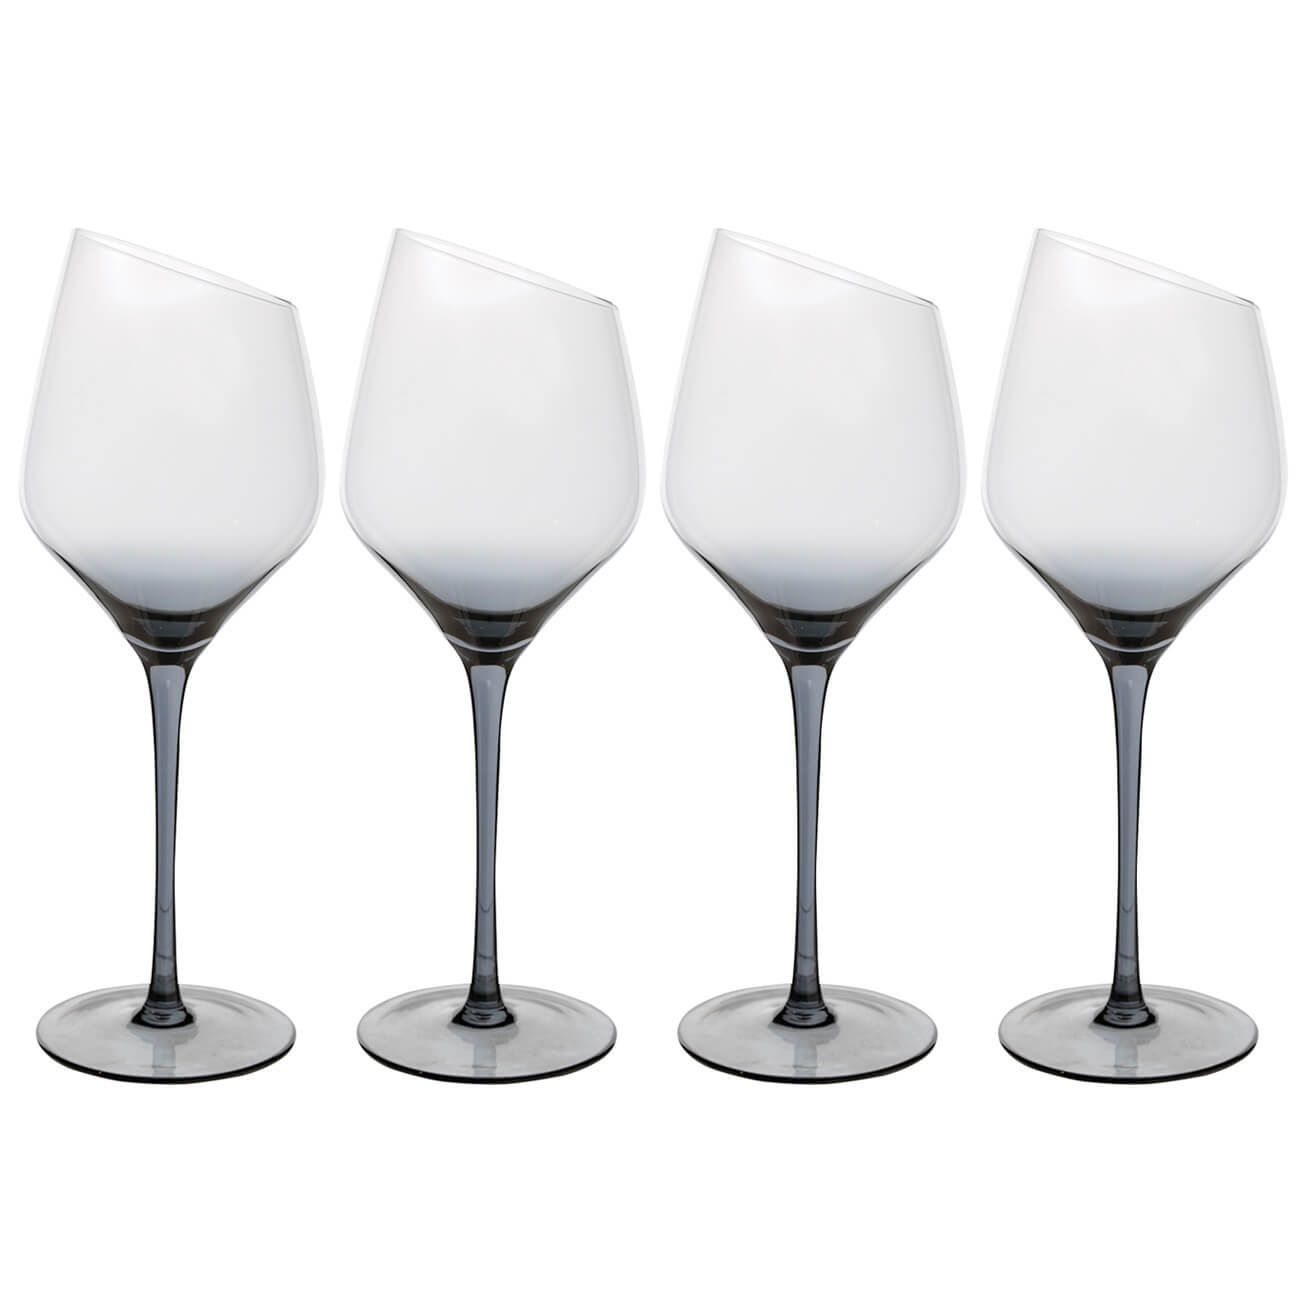 Бокал для белого вина, 460 мл, 4 шт, стекло, серый, Charm L Color бокал для белого вина 460 мл 4 шт стекло серый charm l color